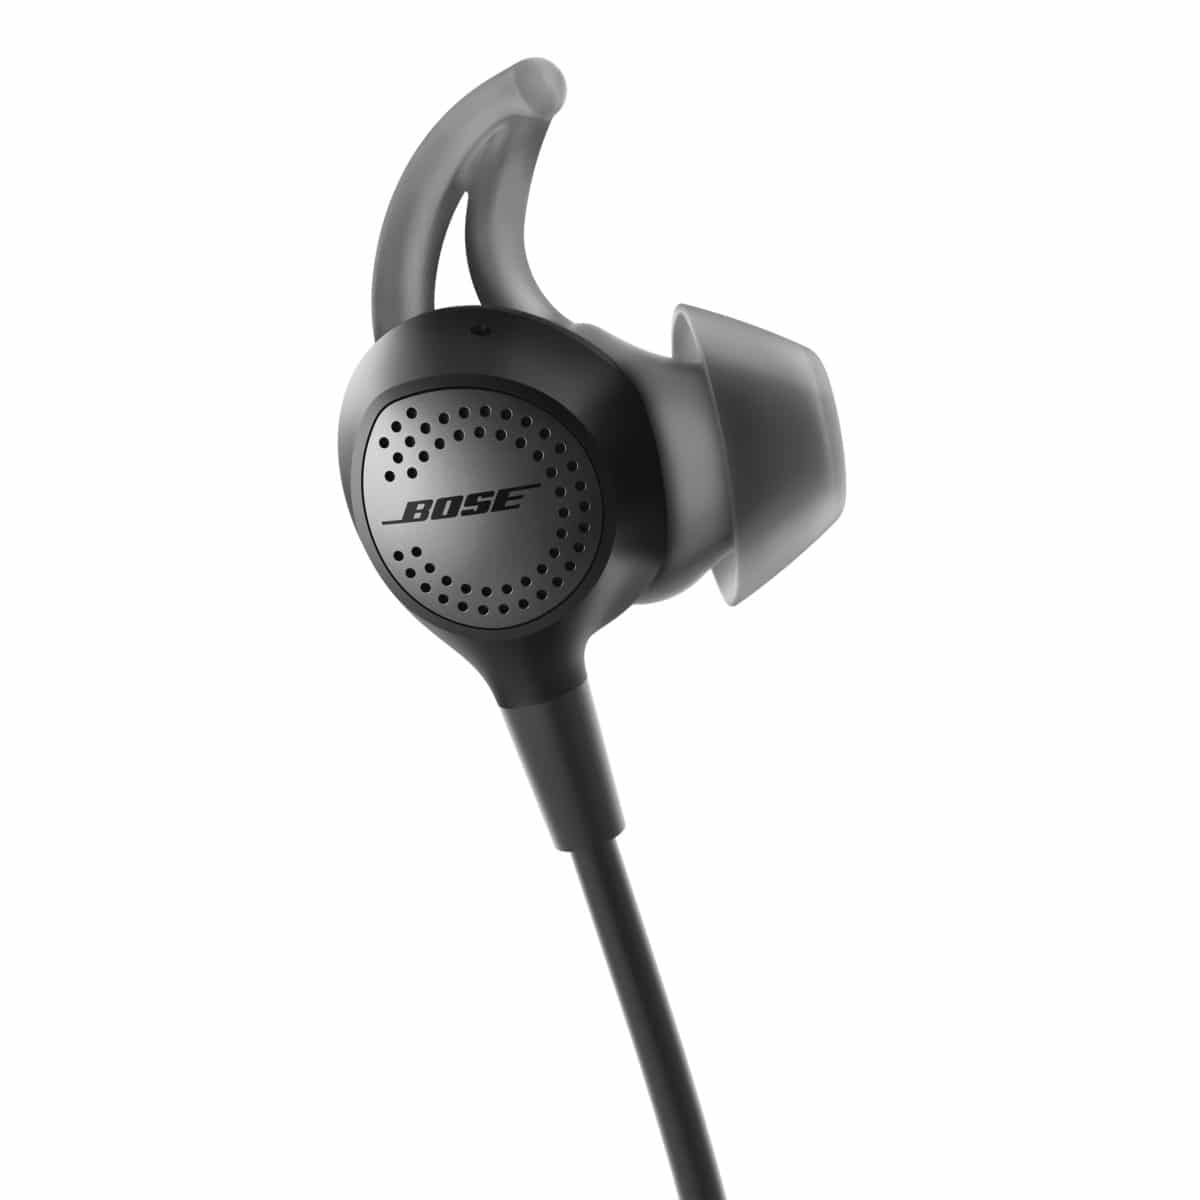 QC30 quietcomfort 30 test trådløse høretelefoner in-ears inears støjreduktion aktiv passiv støjdæmpning telefon bluetooth headset høretelefoner hørebøffter test anmeldelse af